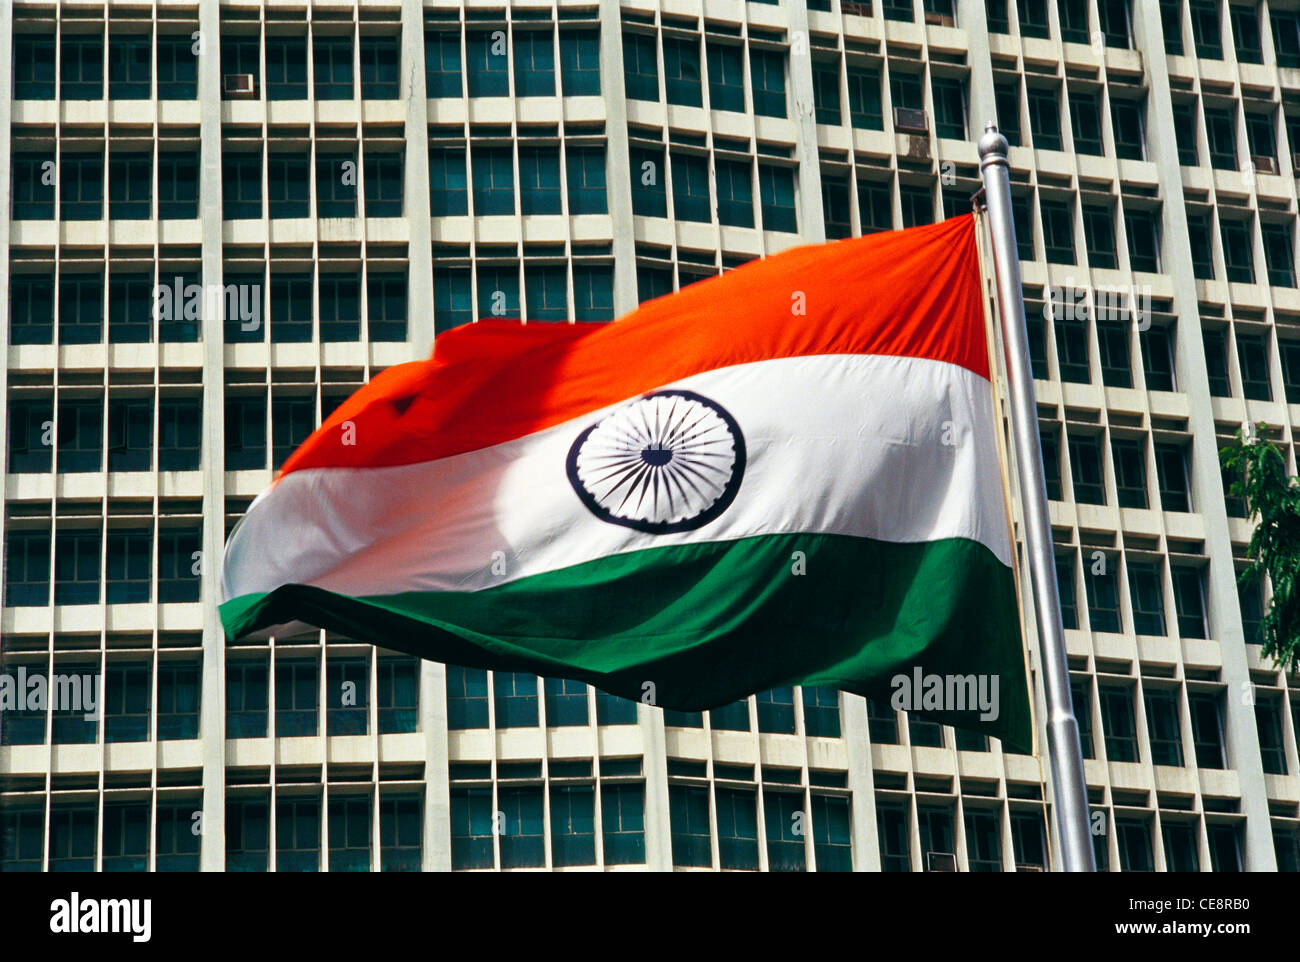 Bandiera indiana di volo India flutting il giorno dell'indipendenza ; India ; Asia Foto Stock